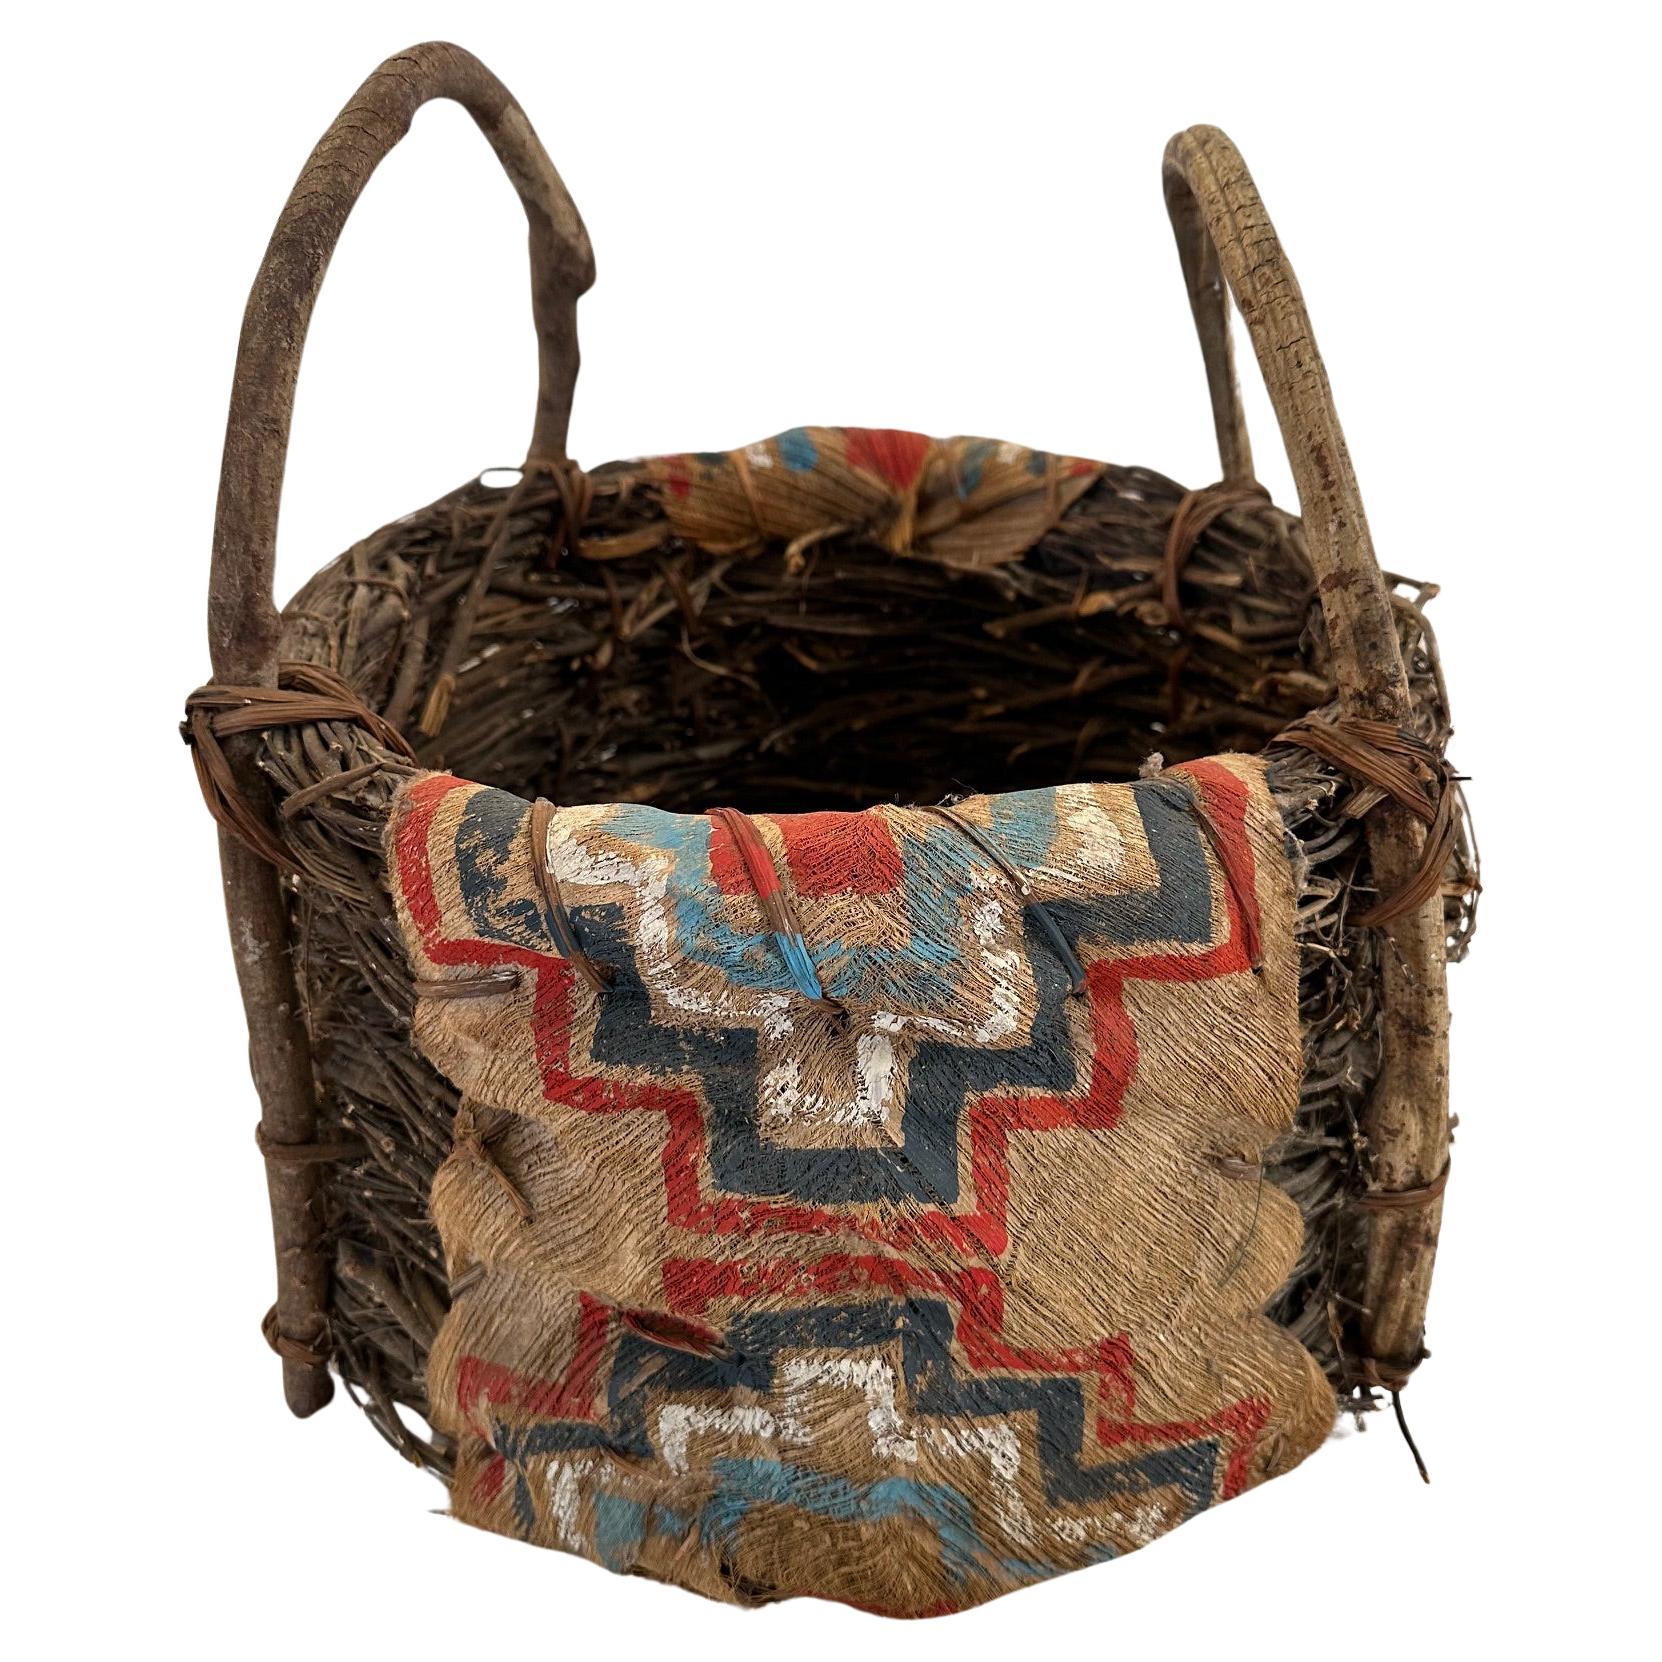 Panier ancien en écorce et brindilles peint par les Amérindiens